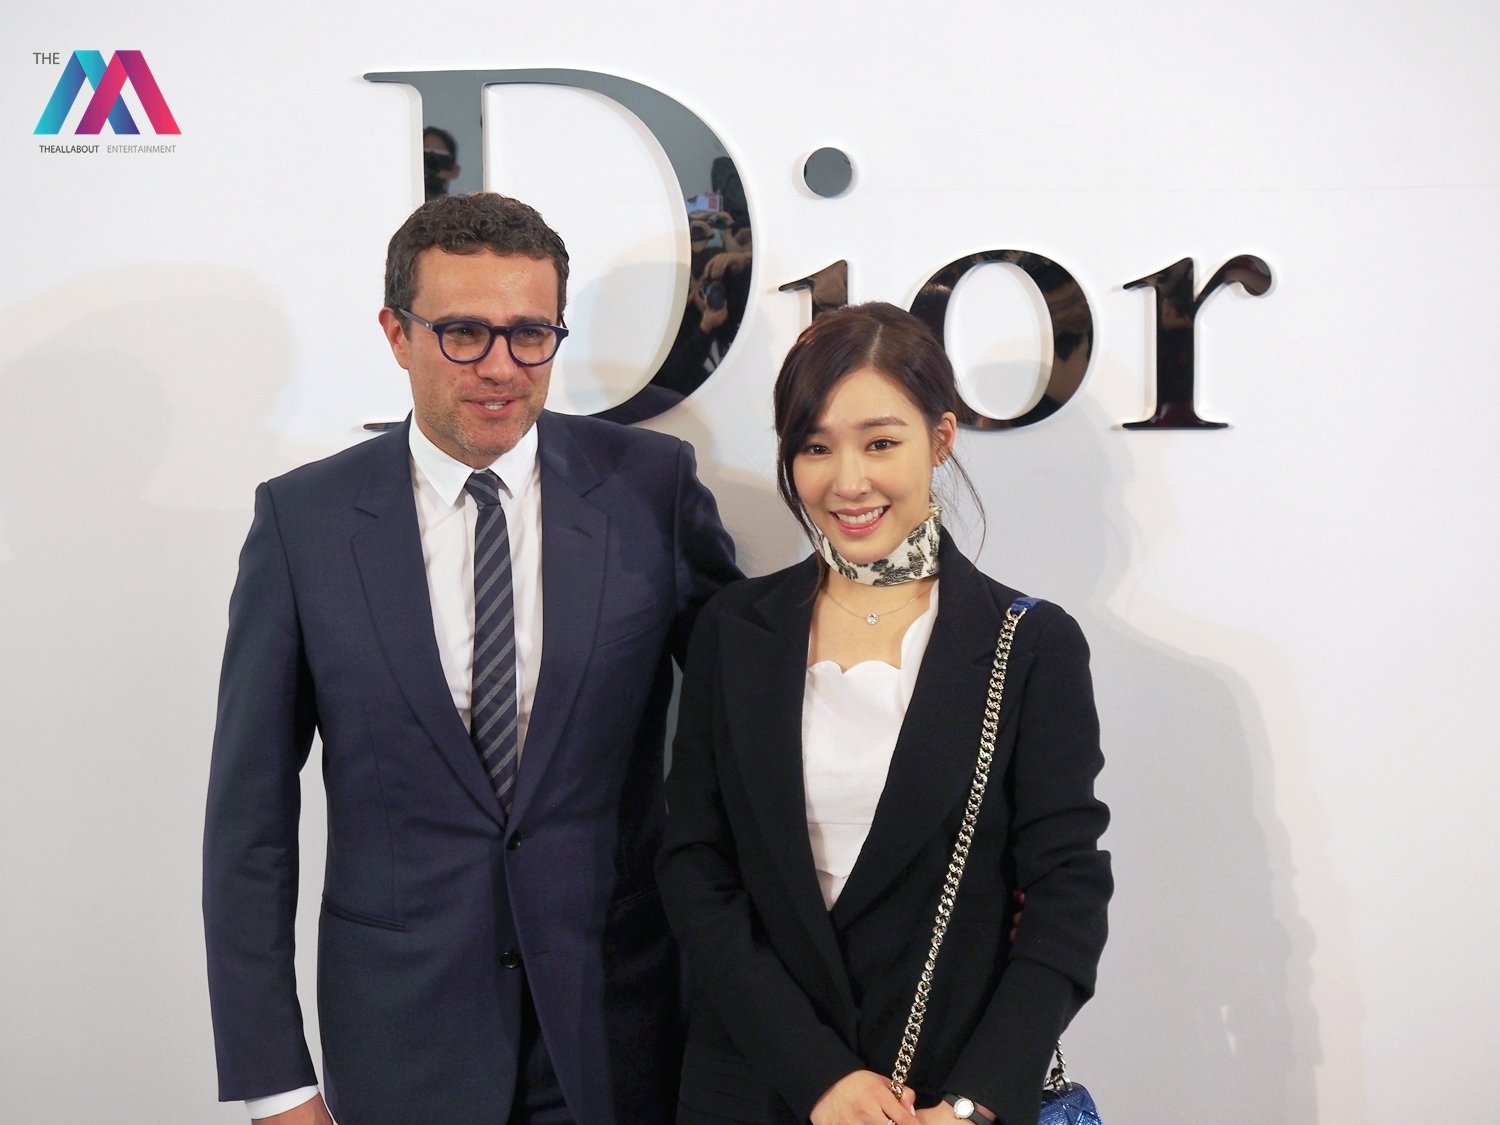 [PIC][17-02-2016]Tiffany khởi hành đi Thái Lan để tham dự sự kiện khai trương chi nhánh của thương hiệu "Christian Dior" vào hôm nay - Page 7 Qd64FI1FiT-3000x3000